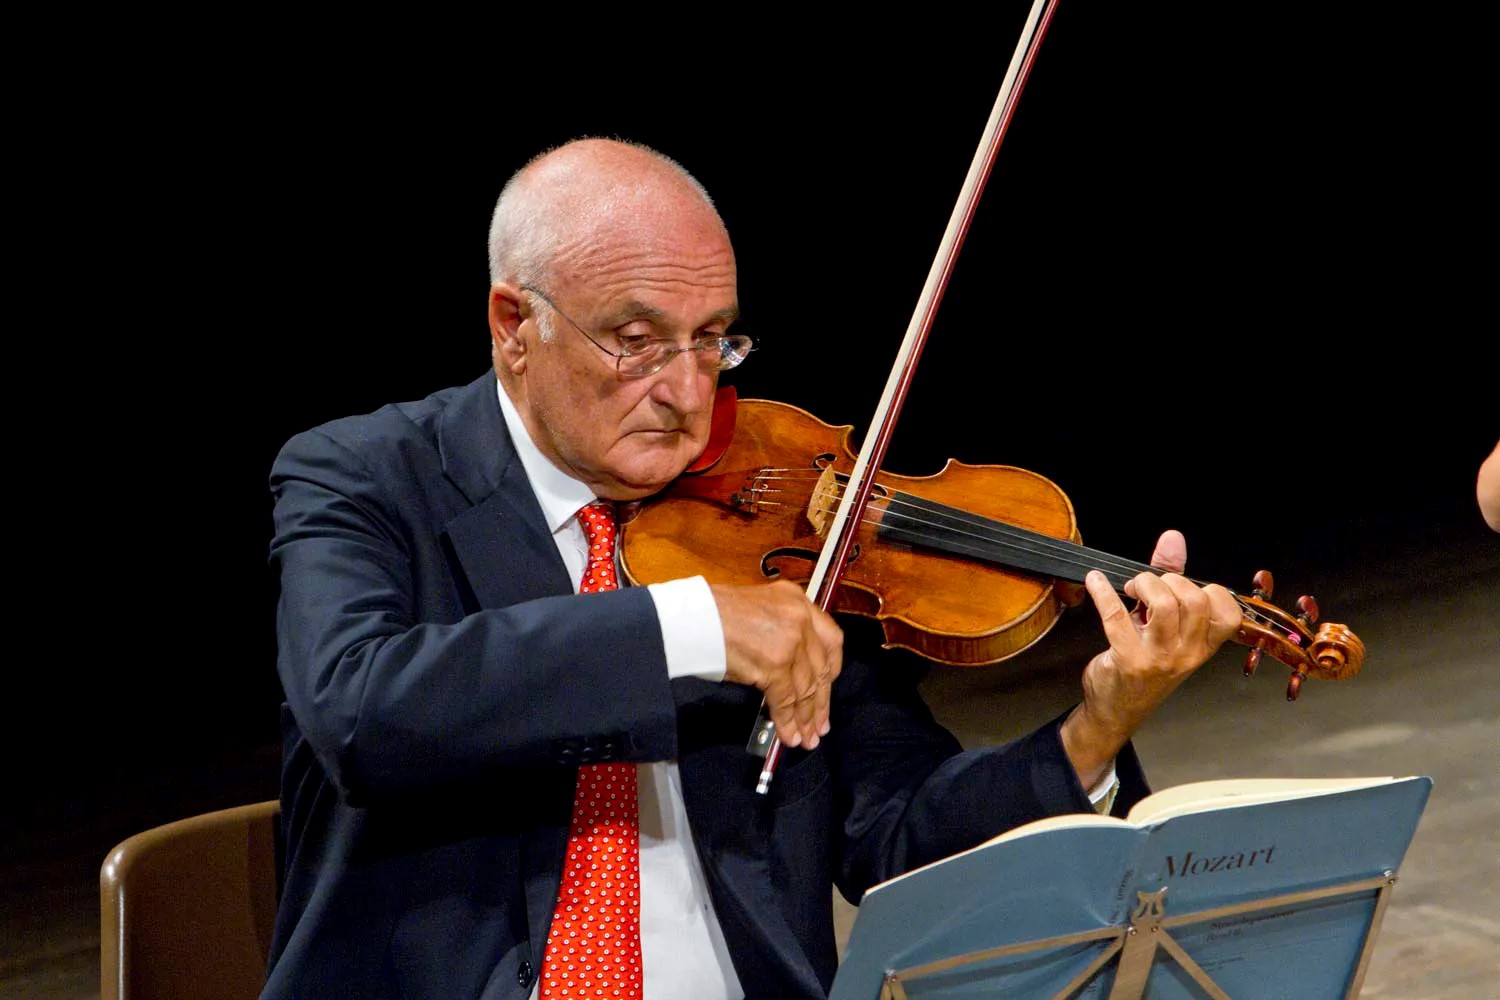 Stagione Concertistica Accademia di Santa Sofia, il prossimo concerto di Salvatore Accardo è già sold out